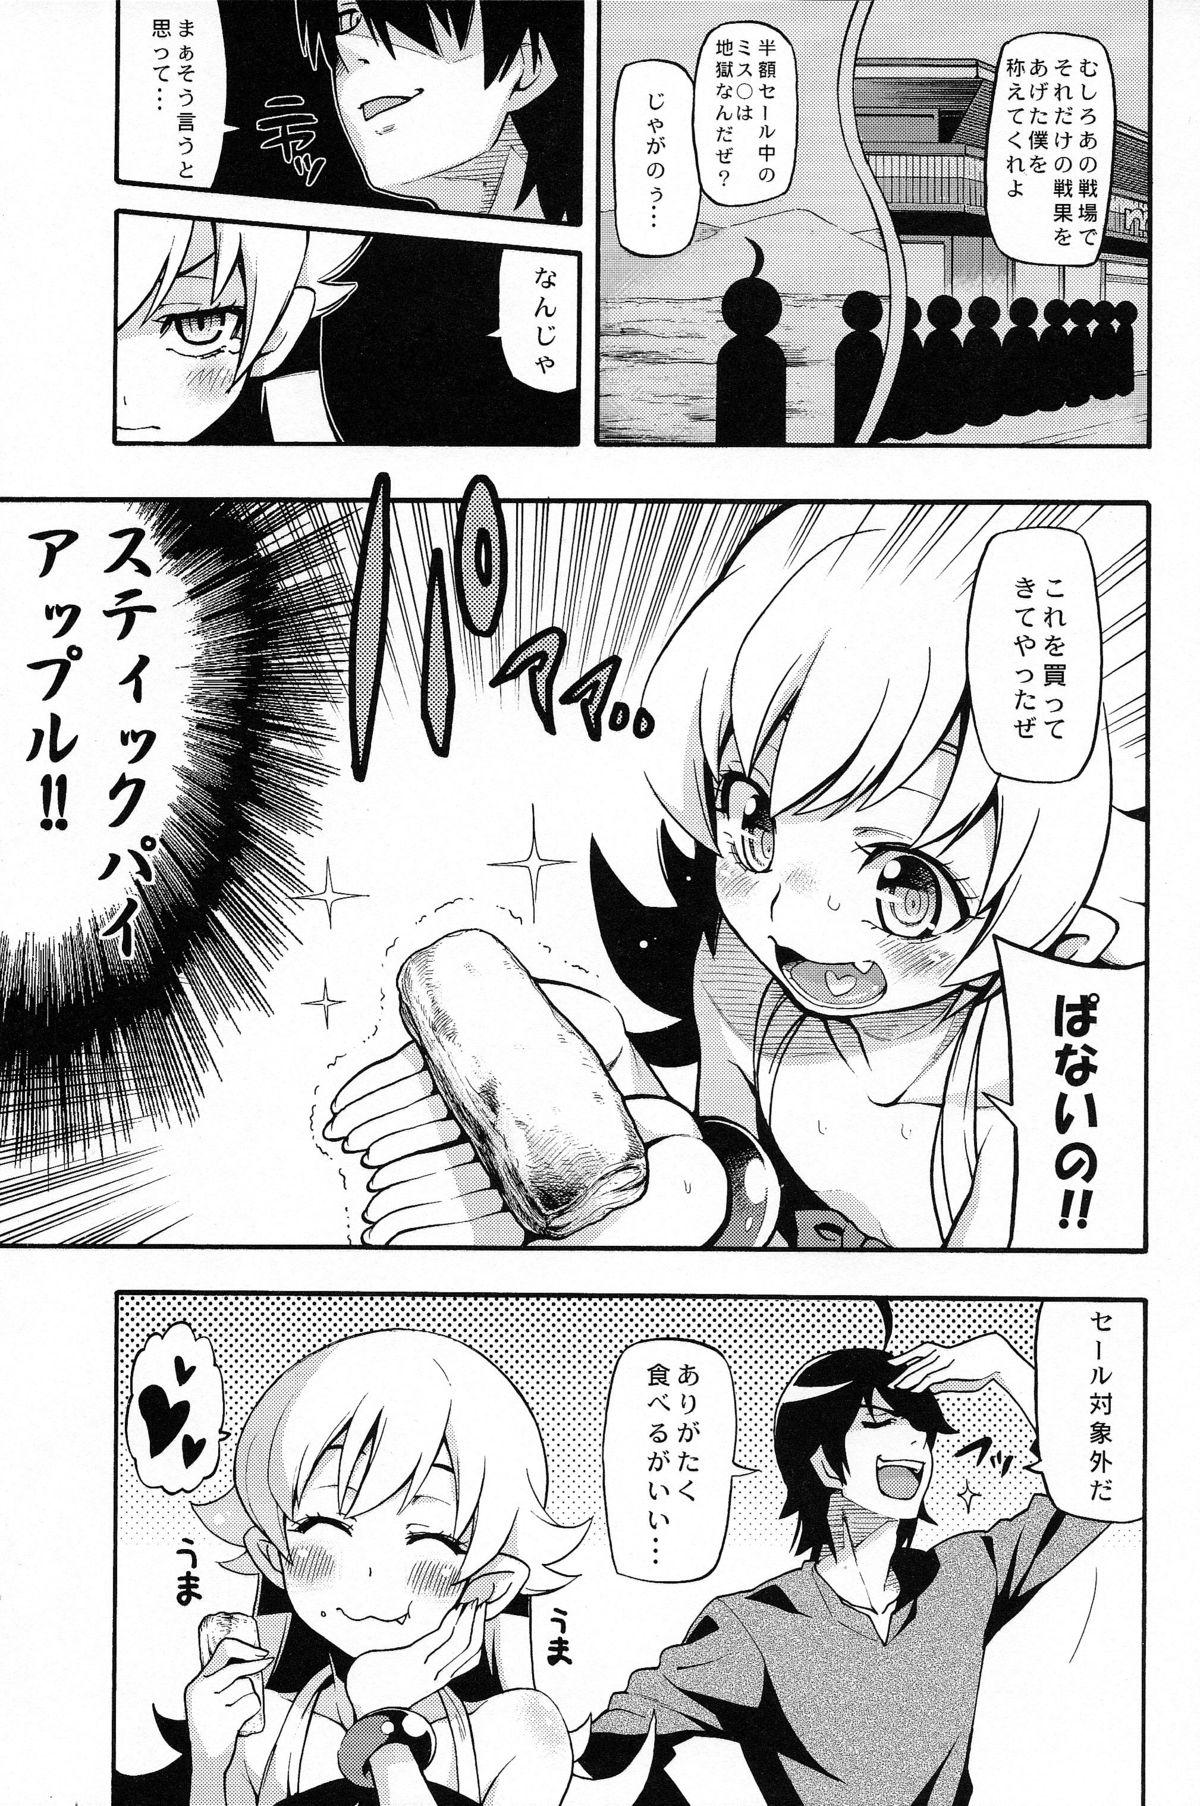 Camwhore Kuzu no Nii chan dakedo Ai sae areba Kankei nain daze - Bakemonogatari Fat - Page 7